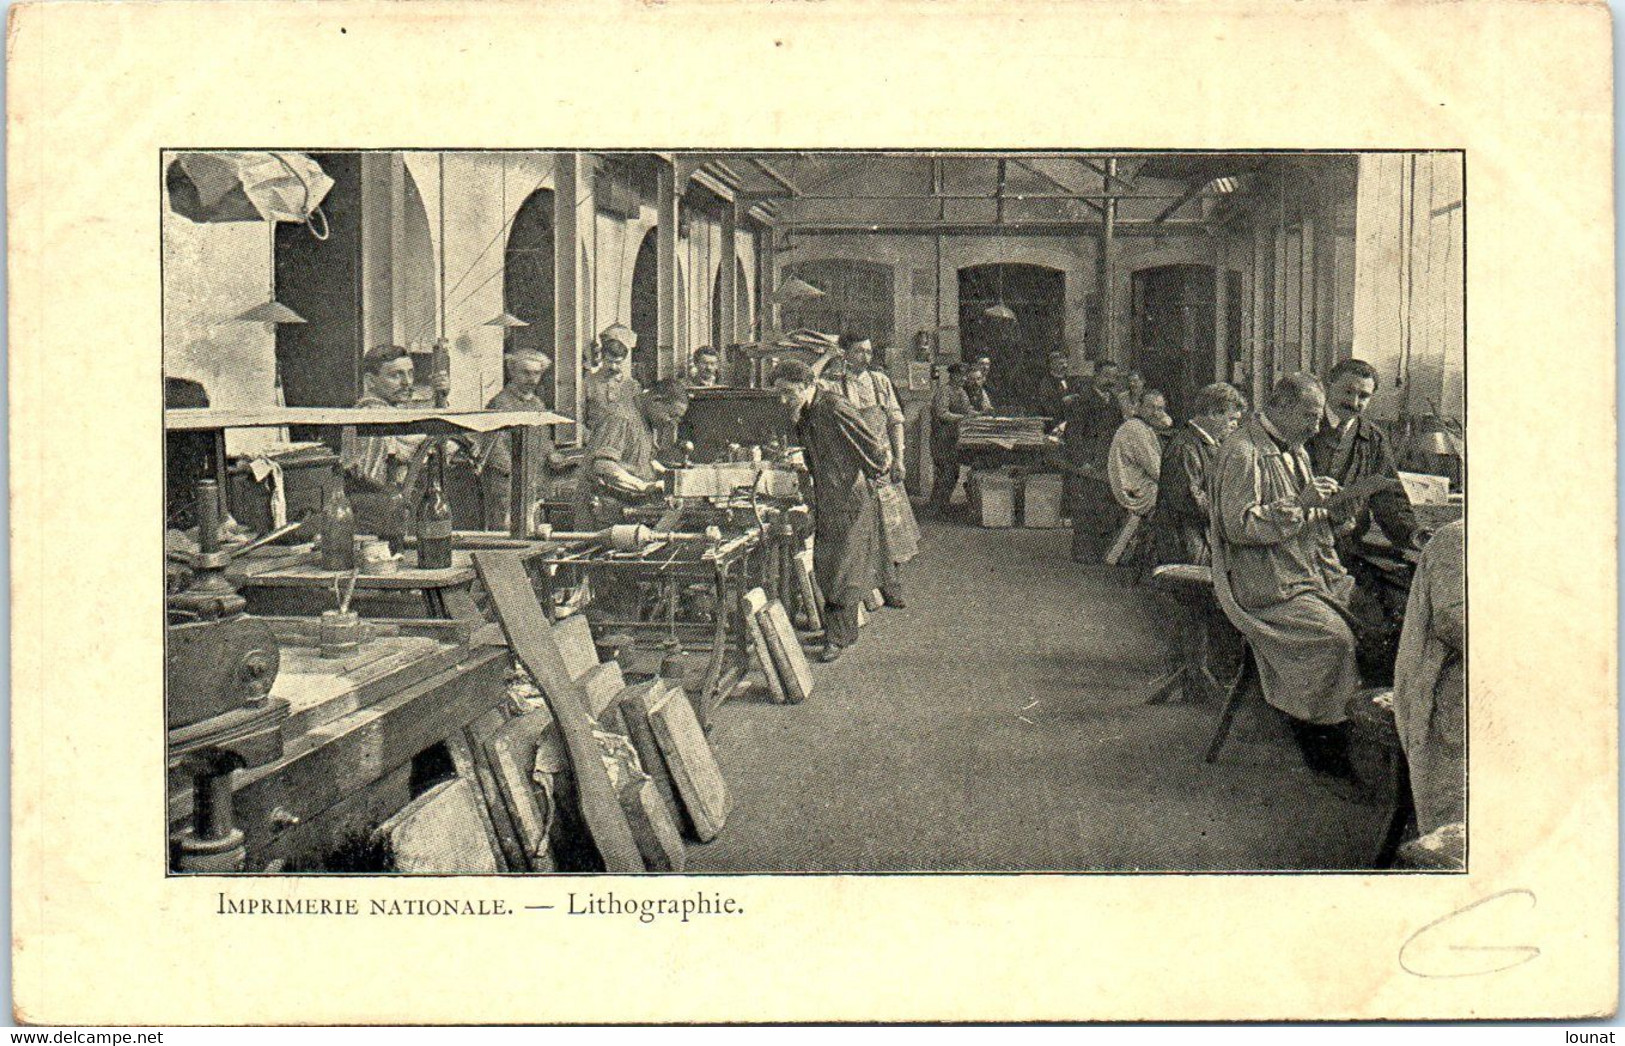 Métier - Imprimerie Nationale - Lithographie - Paris - Industrial